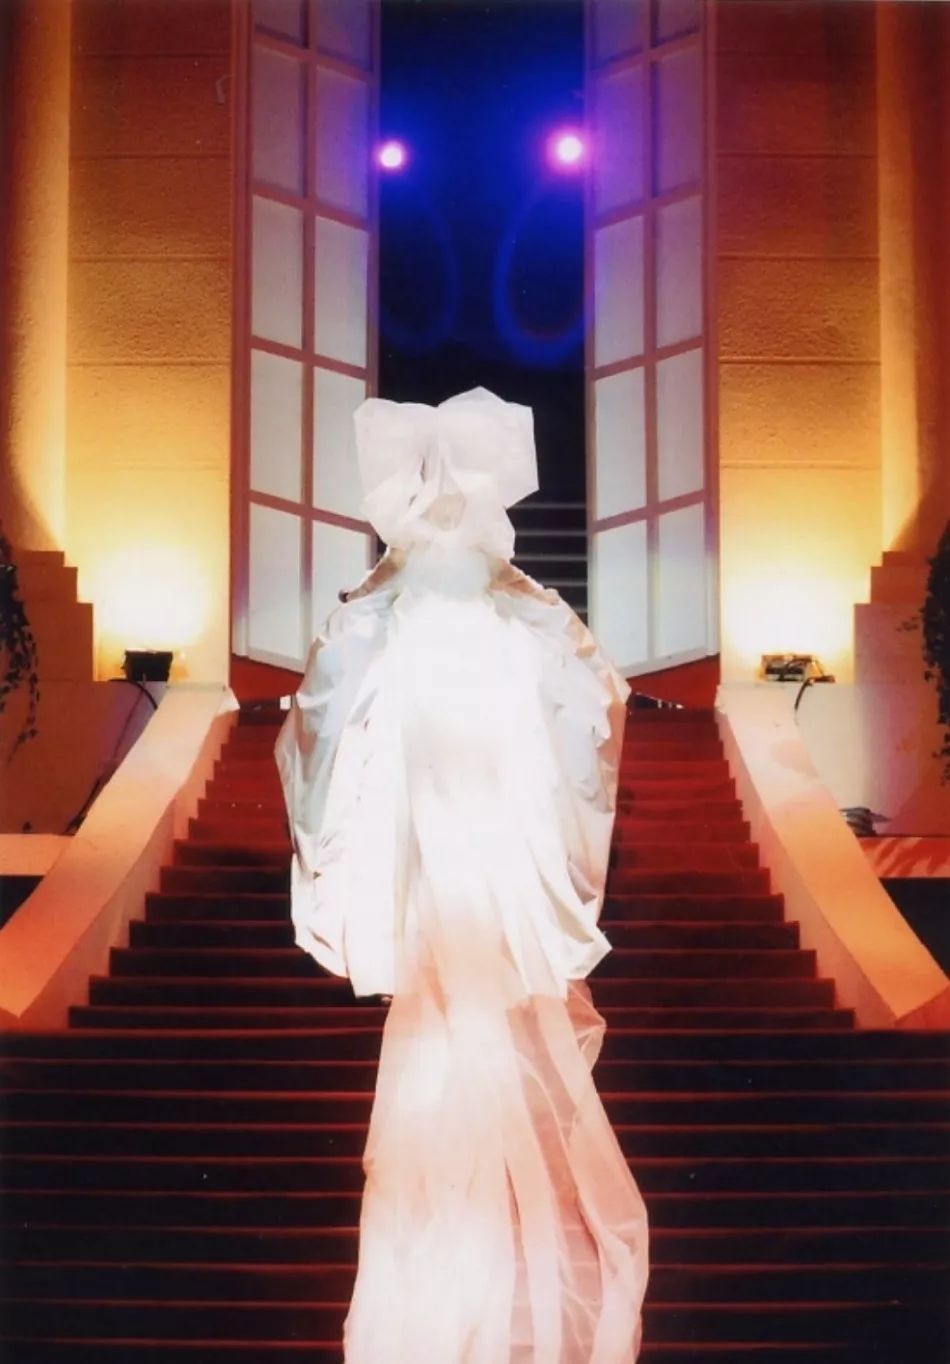 2003年 演唱会婚纱造型 最为印象深刻的莫过于这套婚纱造型,在梅艳芳